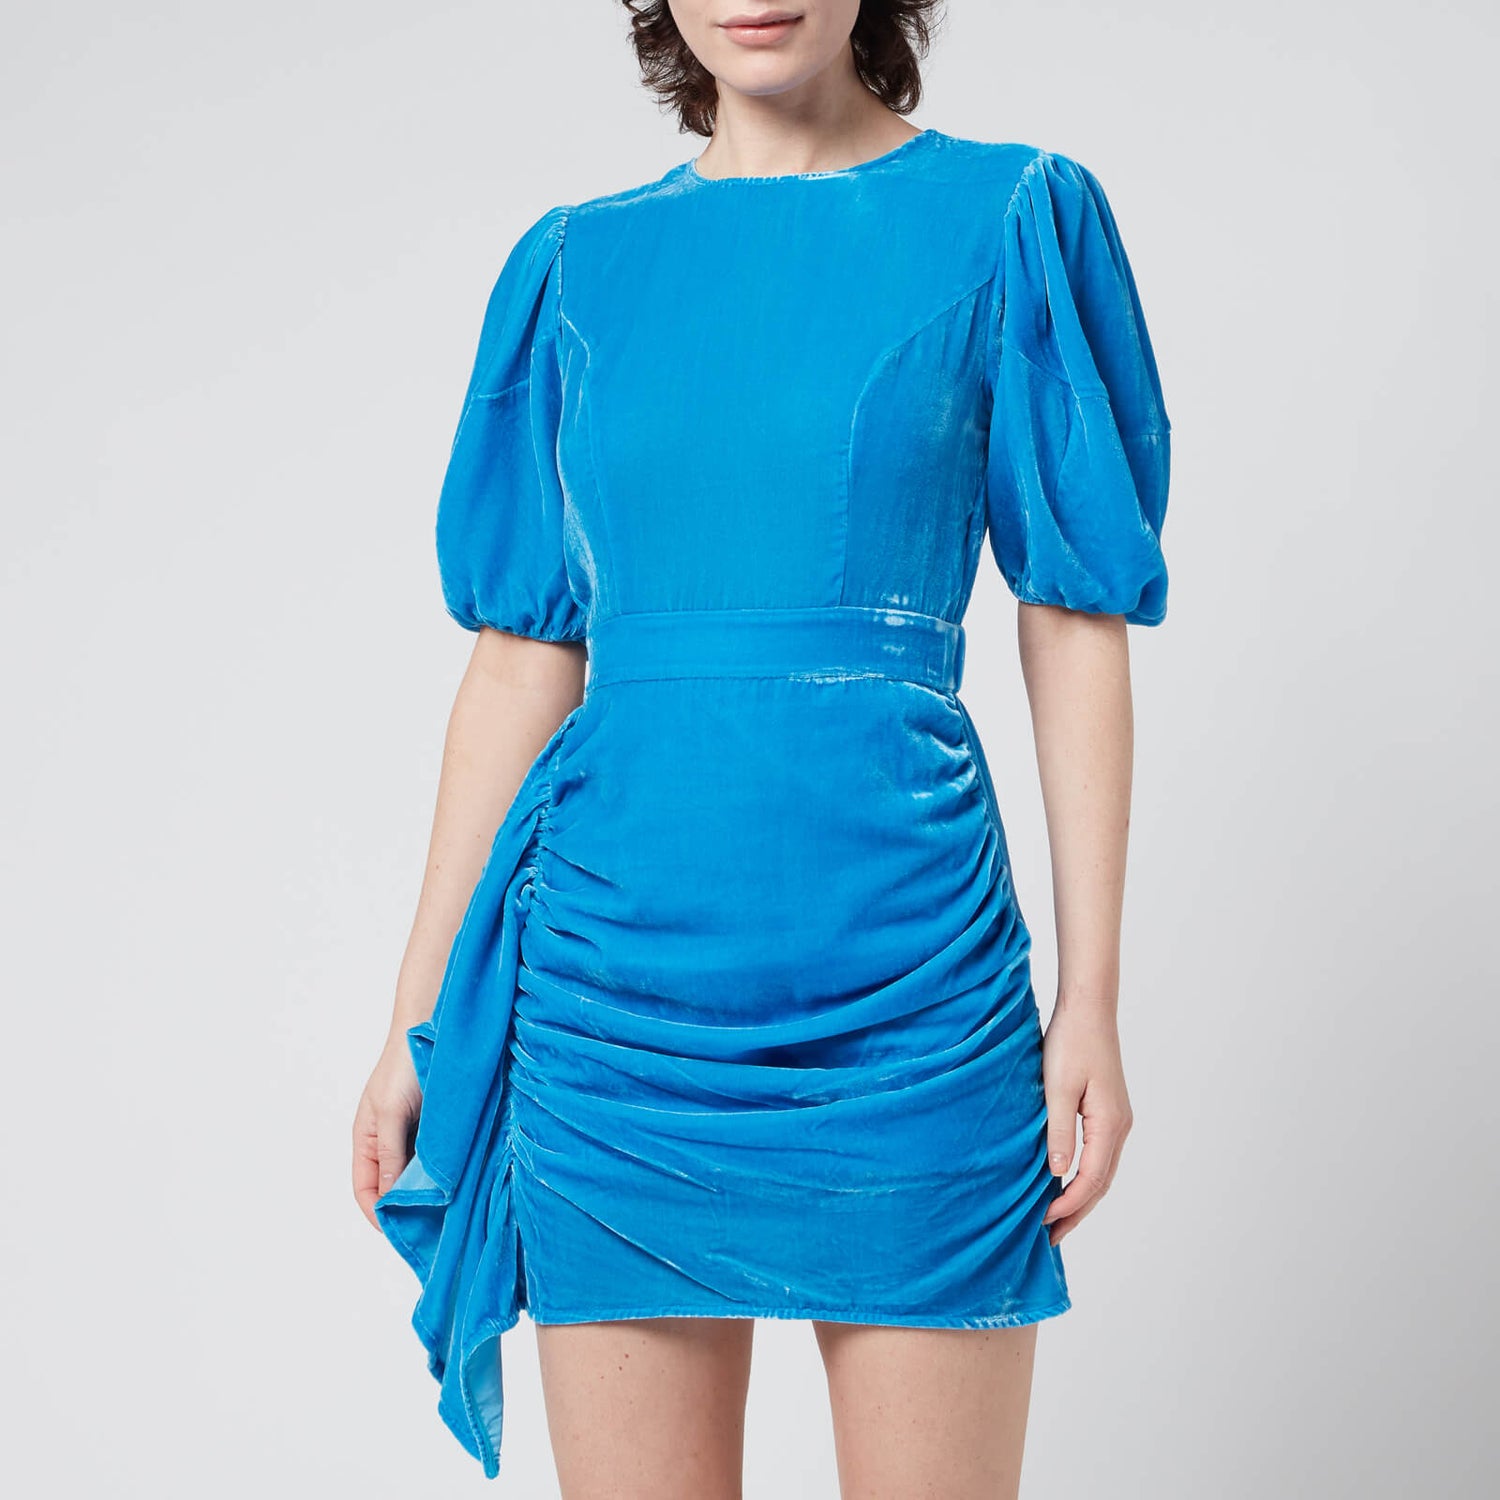 Rhode Women's Pia Dress - Sapphire - M